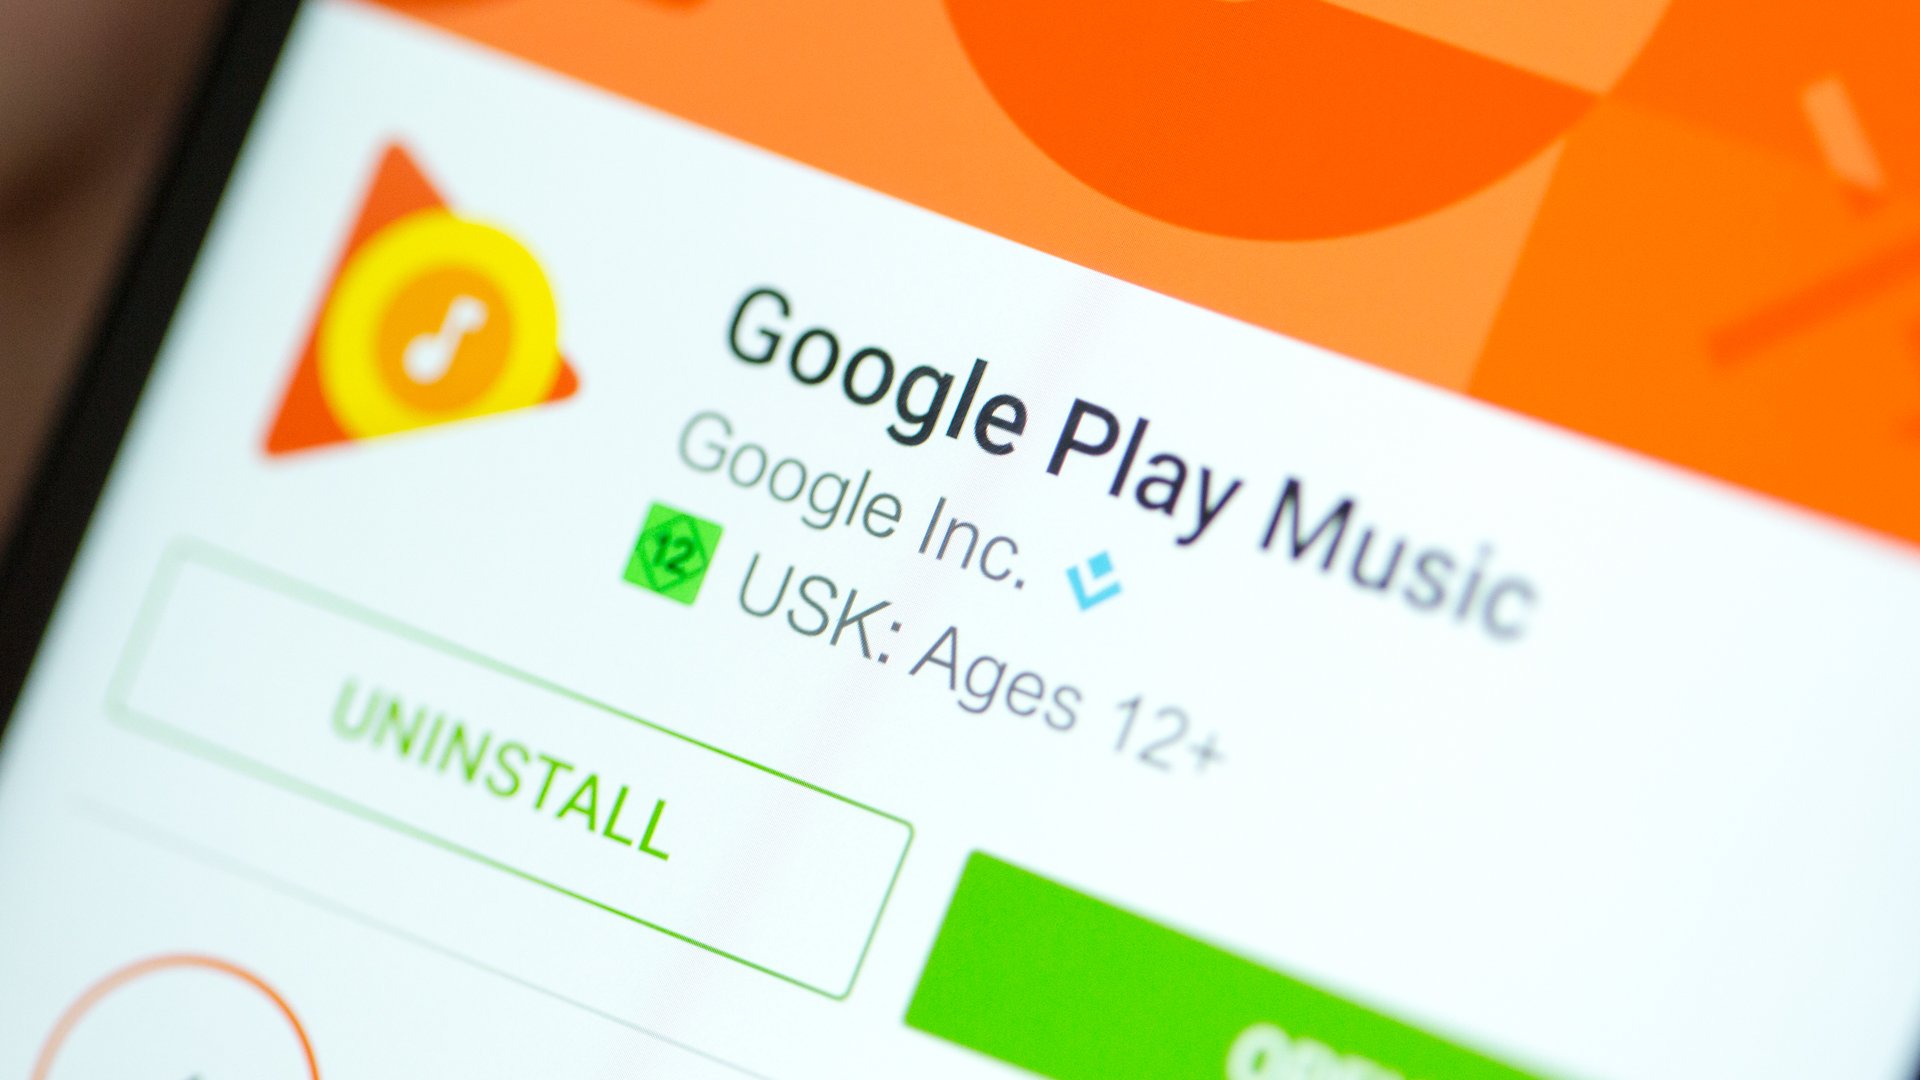 Como compartilhar apps e jogos pagos da Google Play Store! 